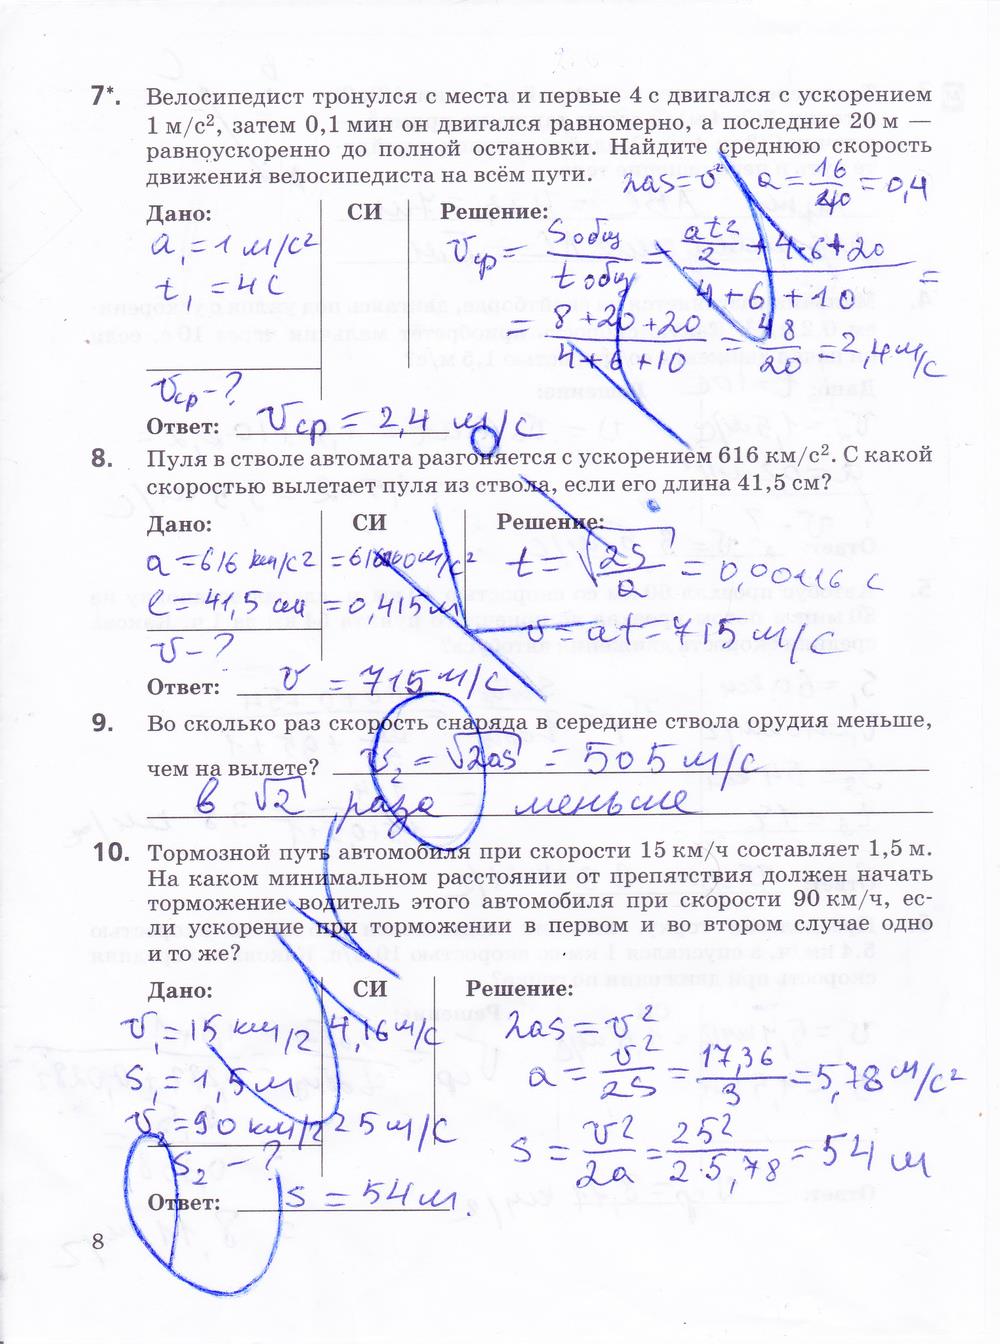 Ответы на лабораторную по физике 9. Физика 10 класс тетрадь Губанов ответы. Физика лабораторные работы контрольные задания 10 класс гдз. Физика 10 контрольные лабораторные Губанов. Контрольные задания по физике 10 класс Губанов ответы.